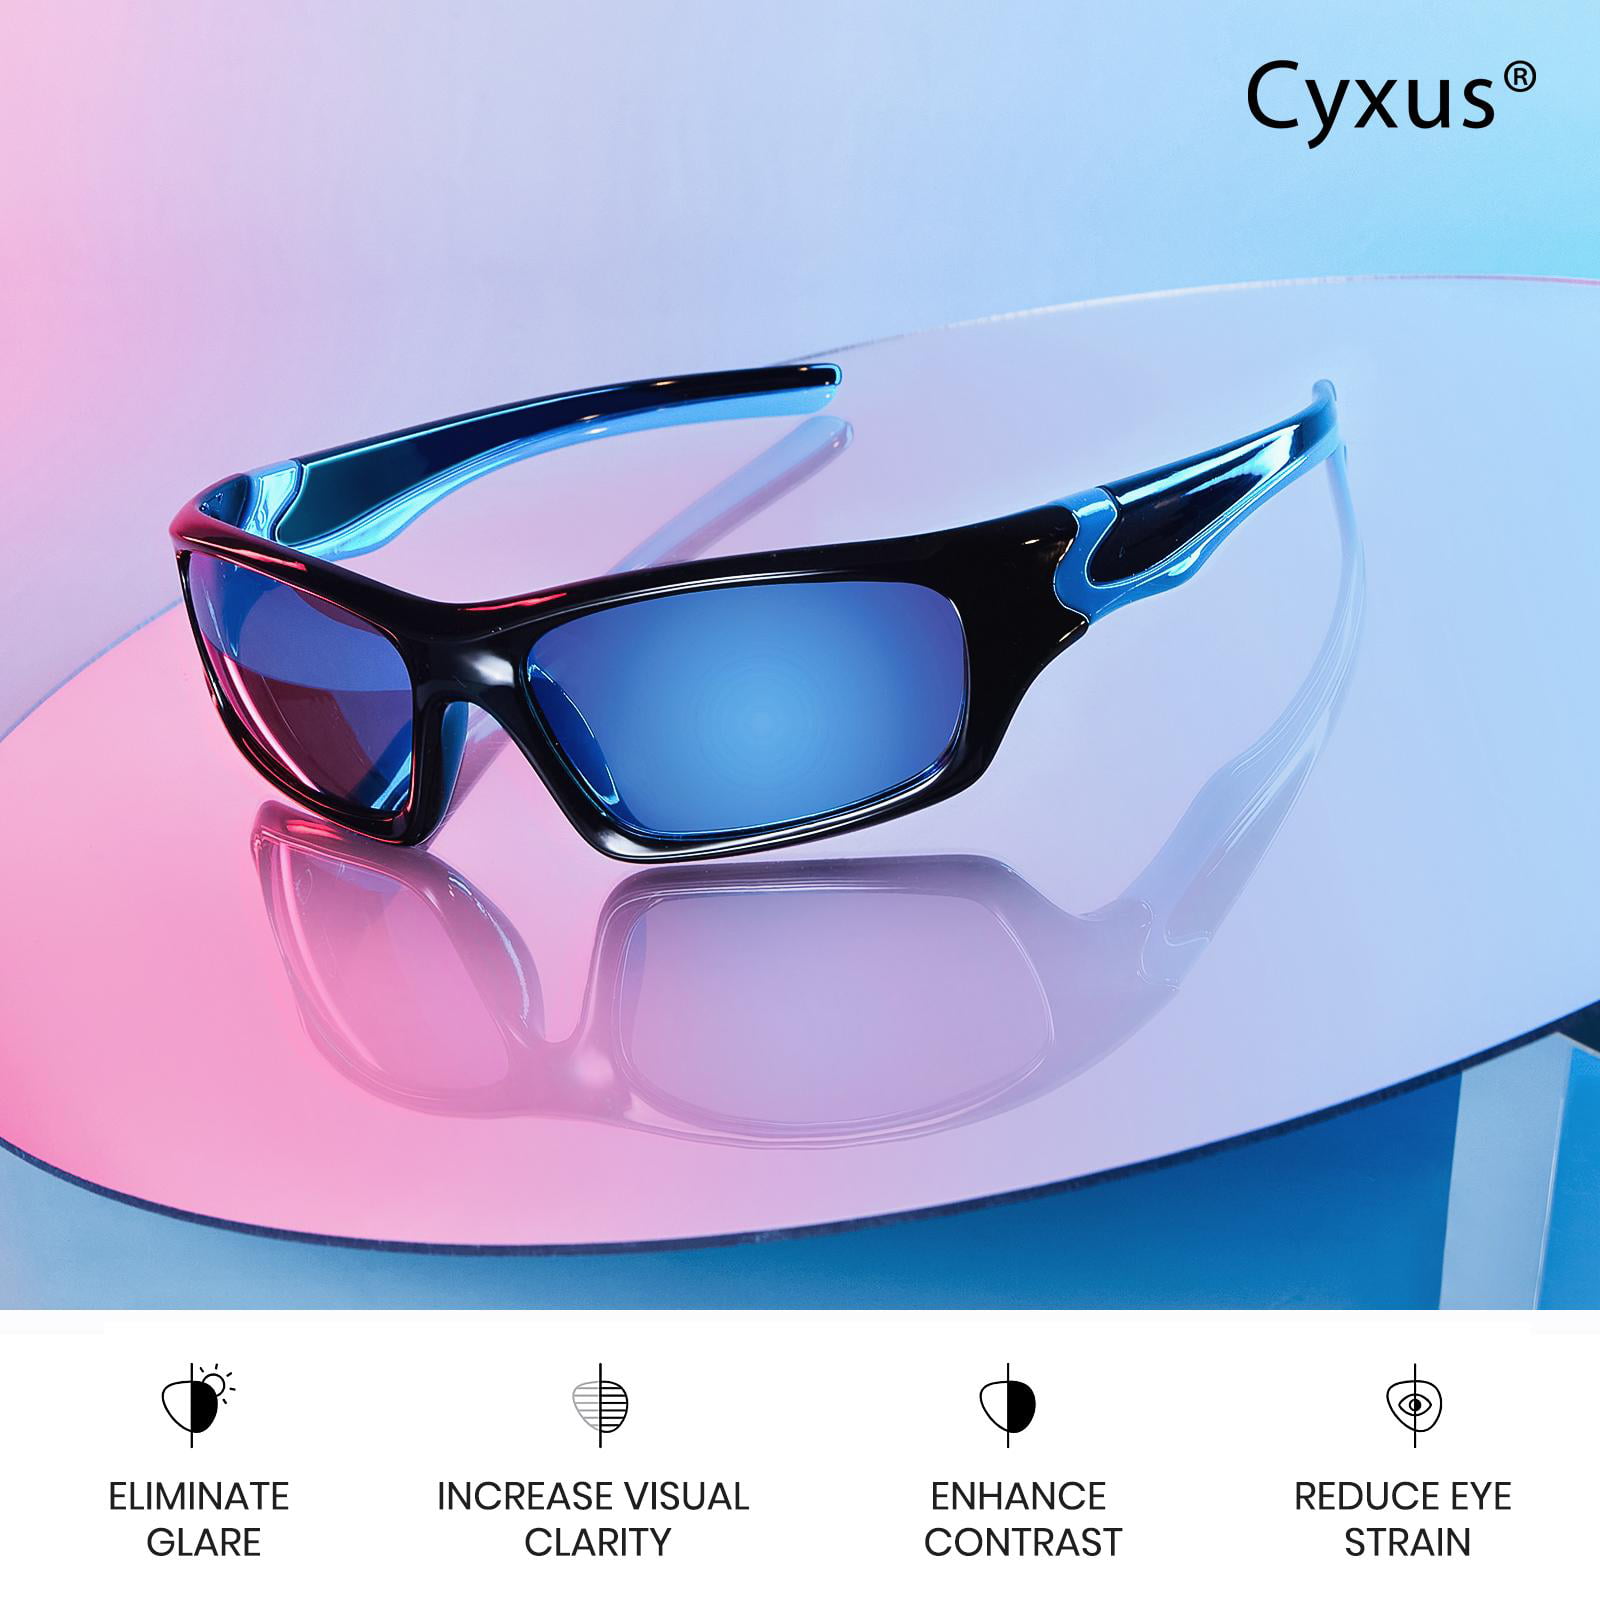 Sunglasses Glasses Sport Cycling work Fishing Eyewear Polarized UV400 Unisex